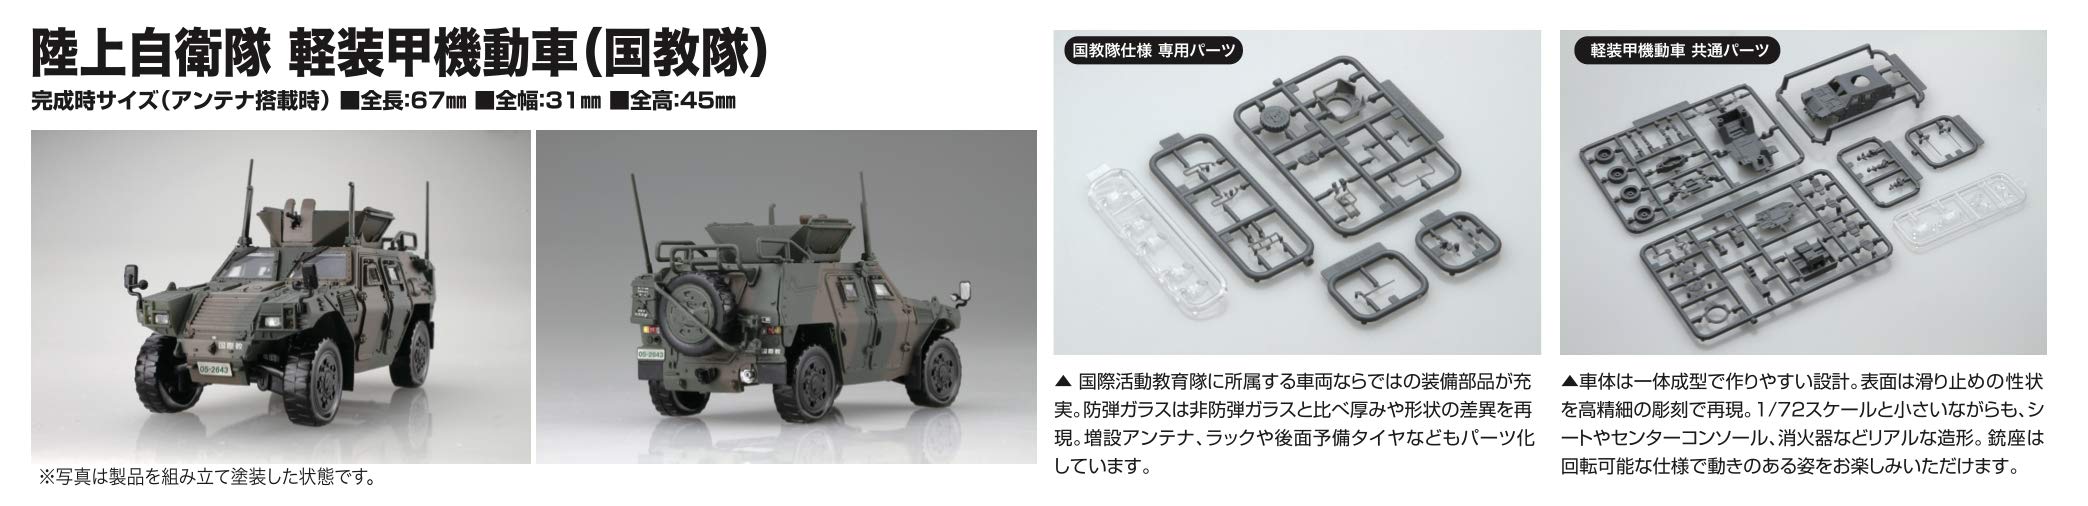 FUJIMI 72M-17 Jgsdf Light Armored Vehicle 2 Set 1/72 Scae Kit